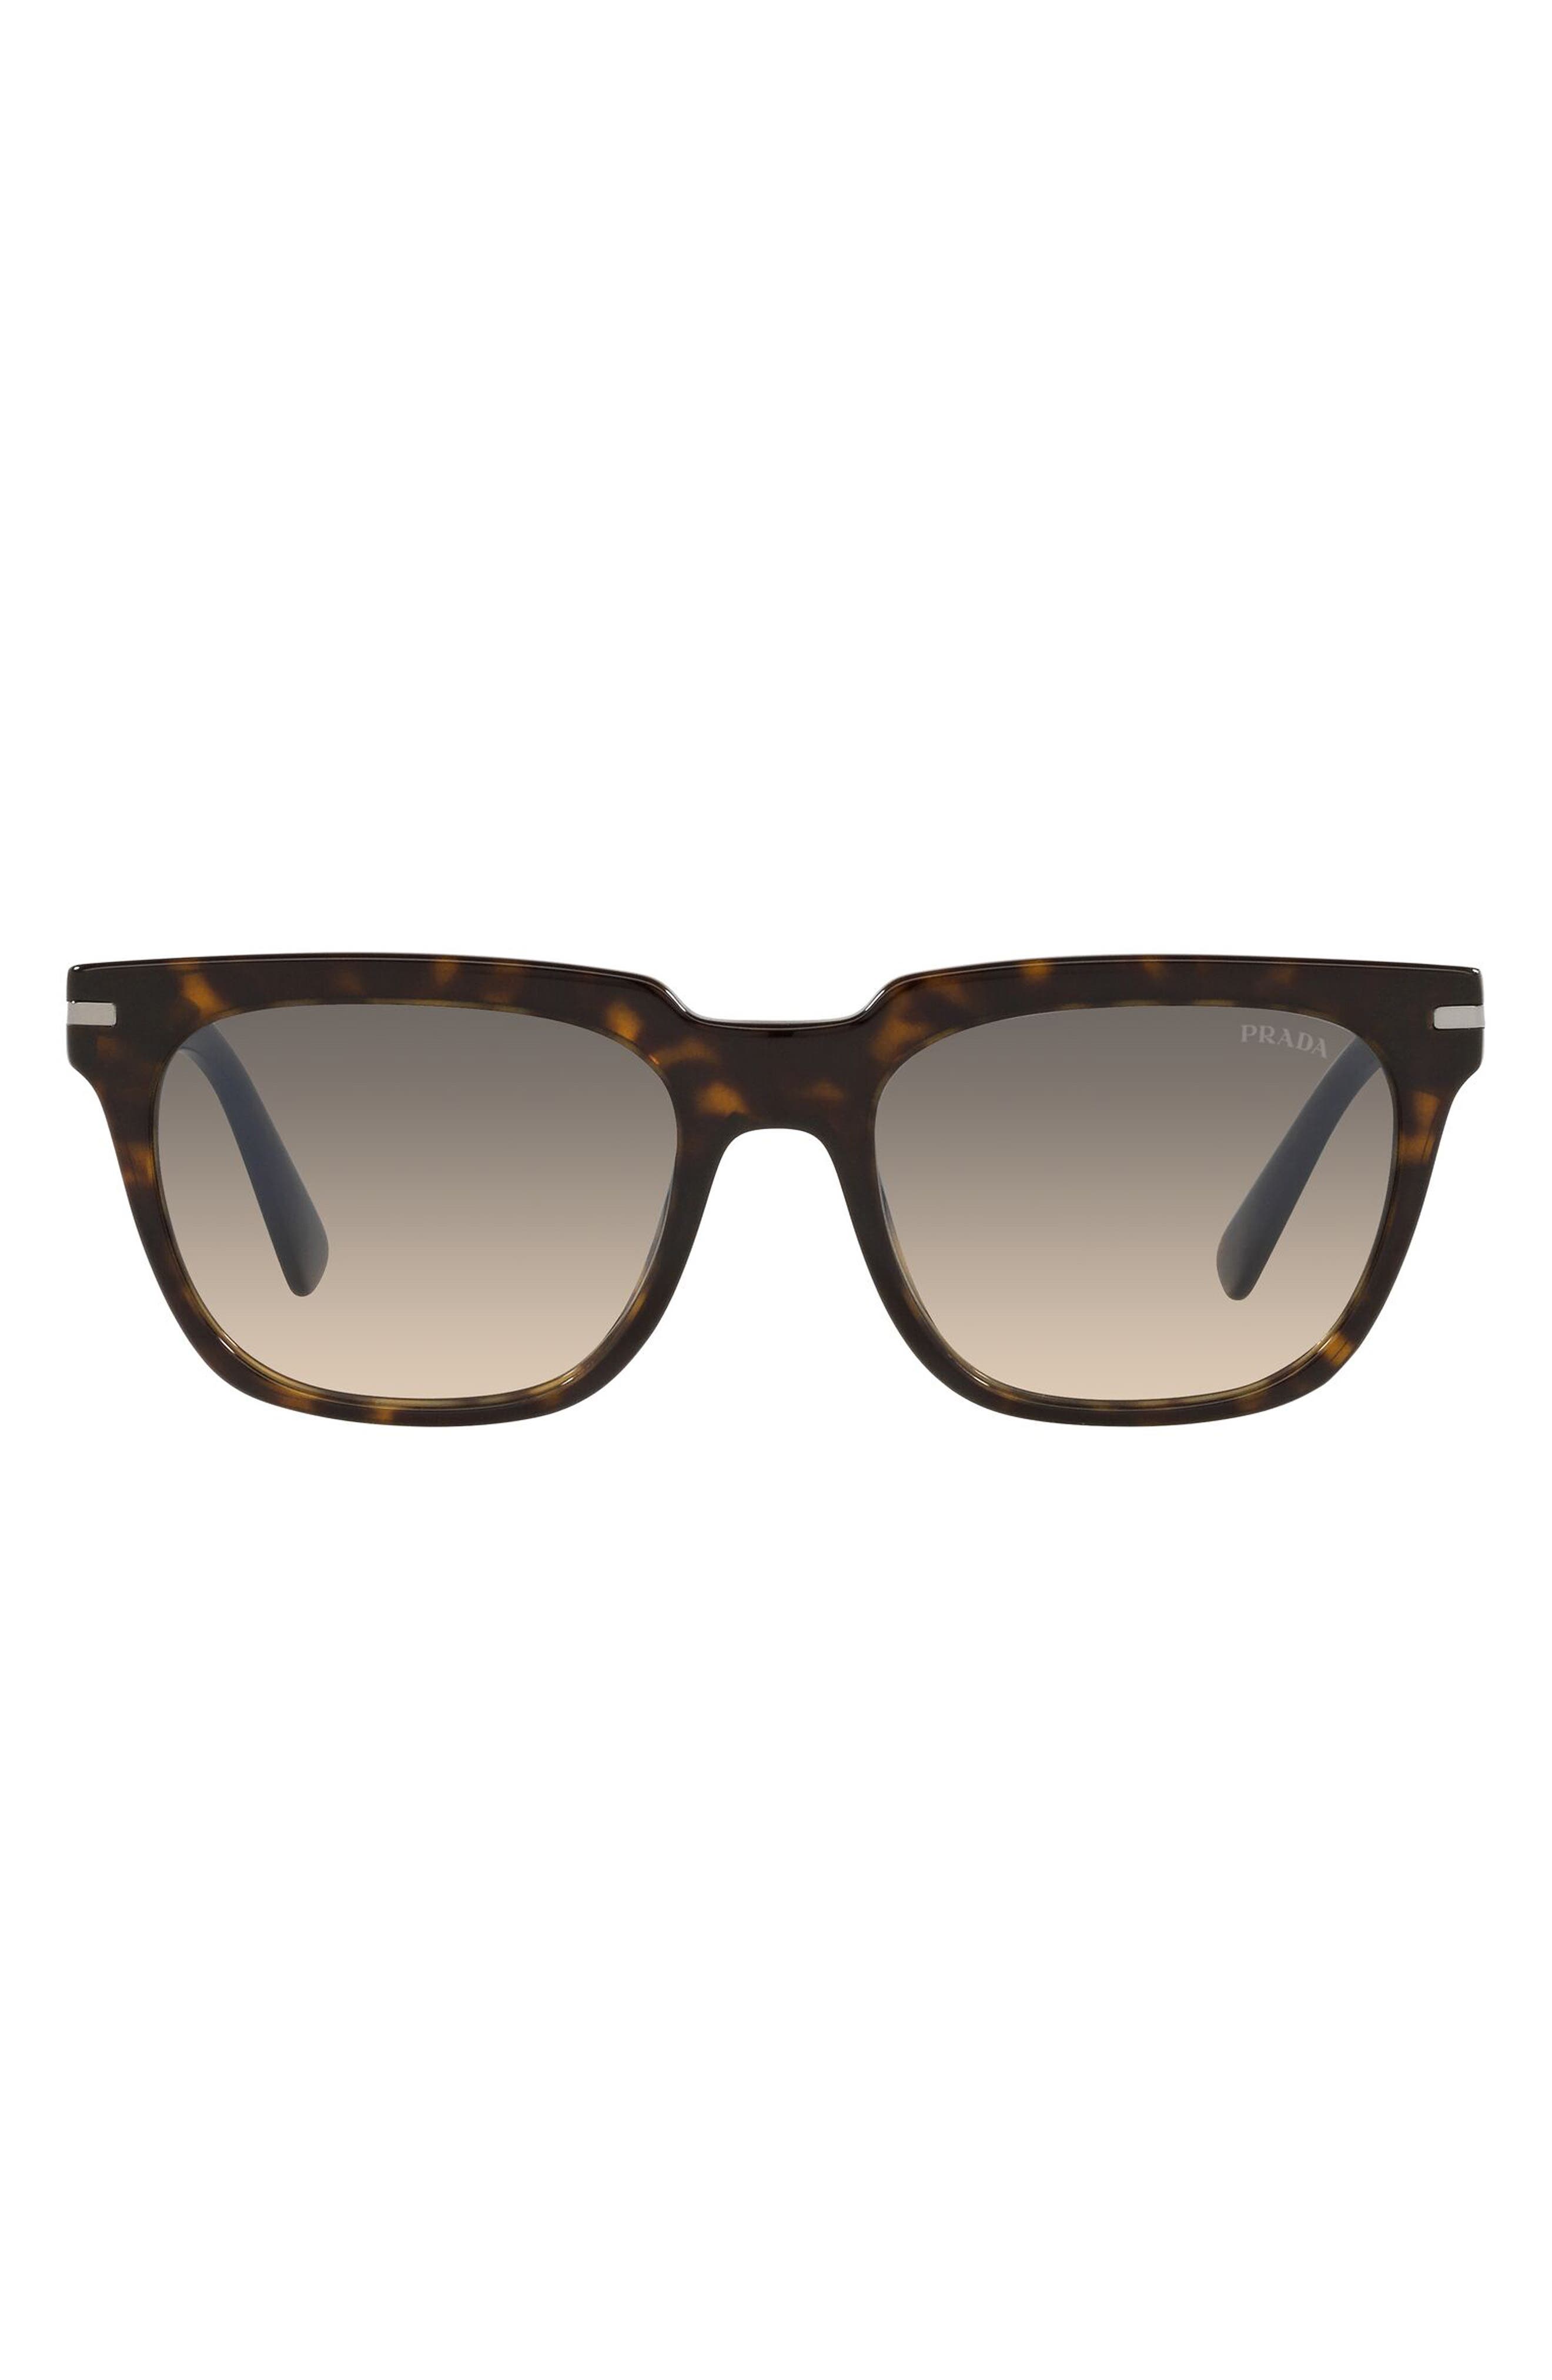 Prada 57mm Gradient Square Sunglasses in Tortoise/Clear Gradient Grey